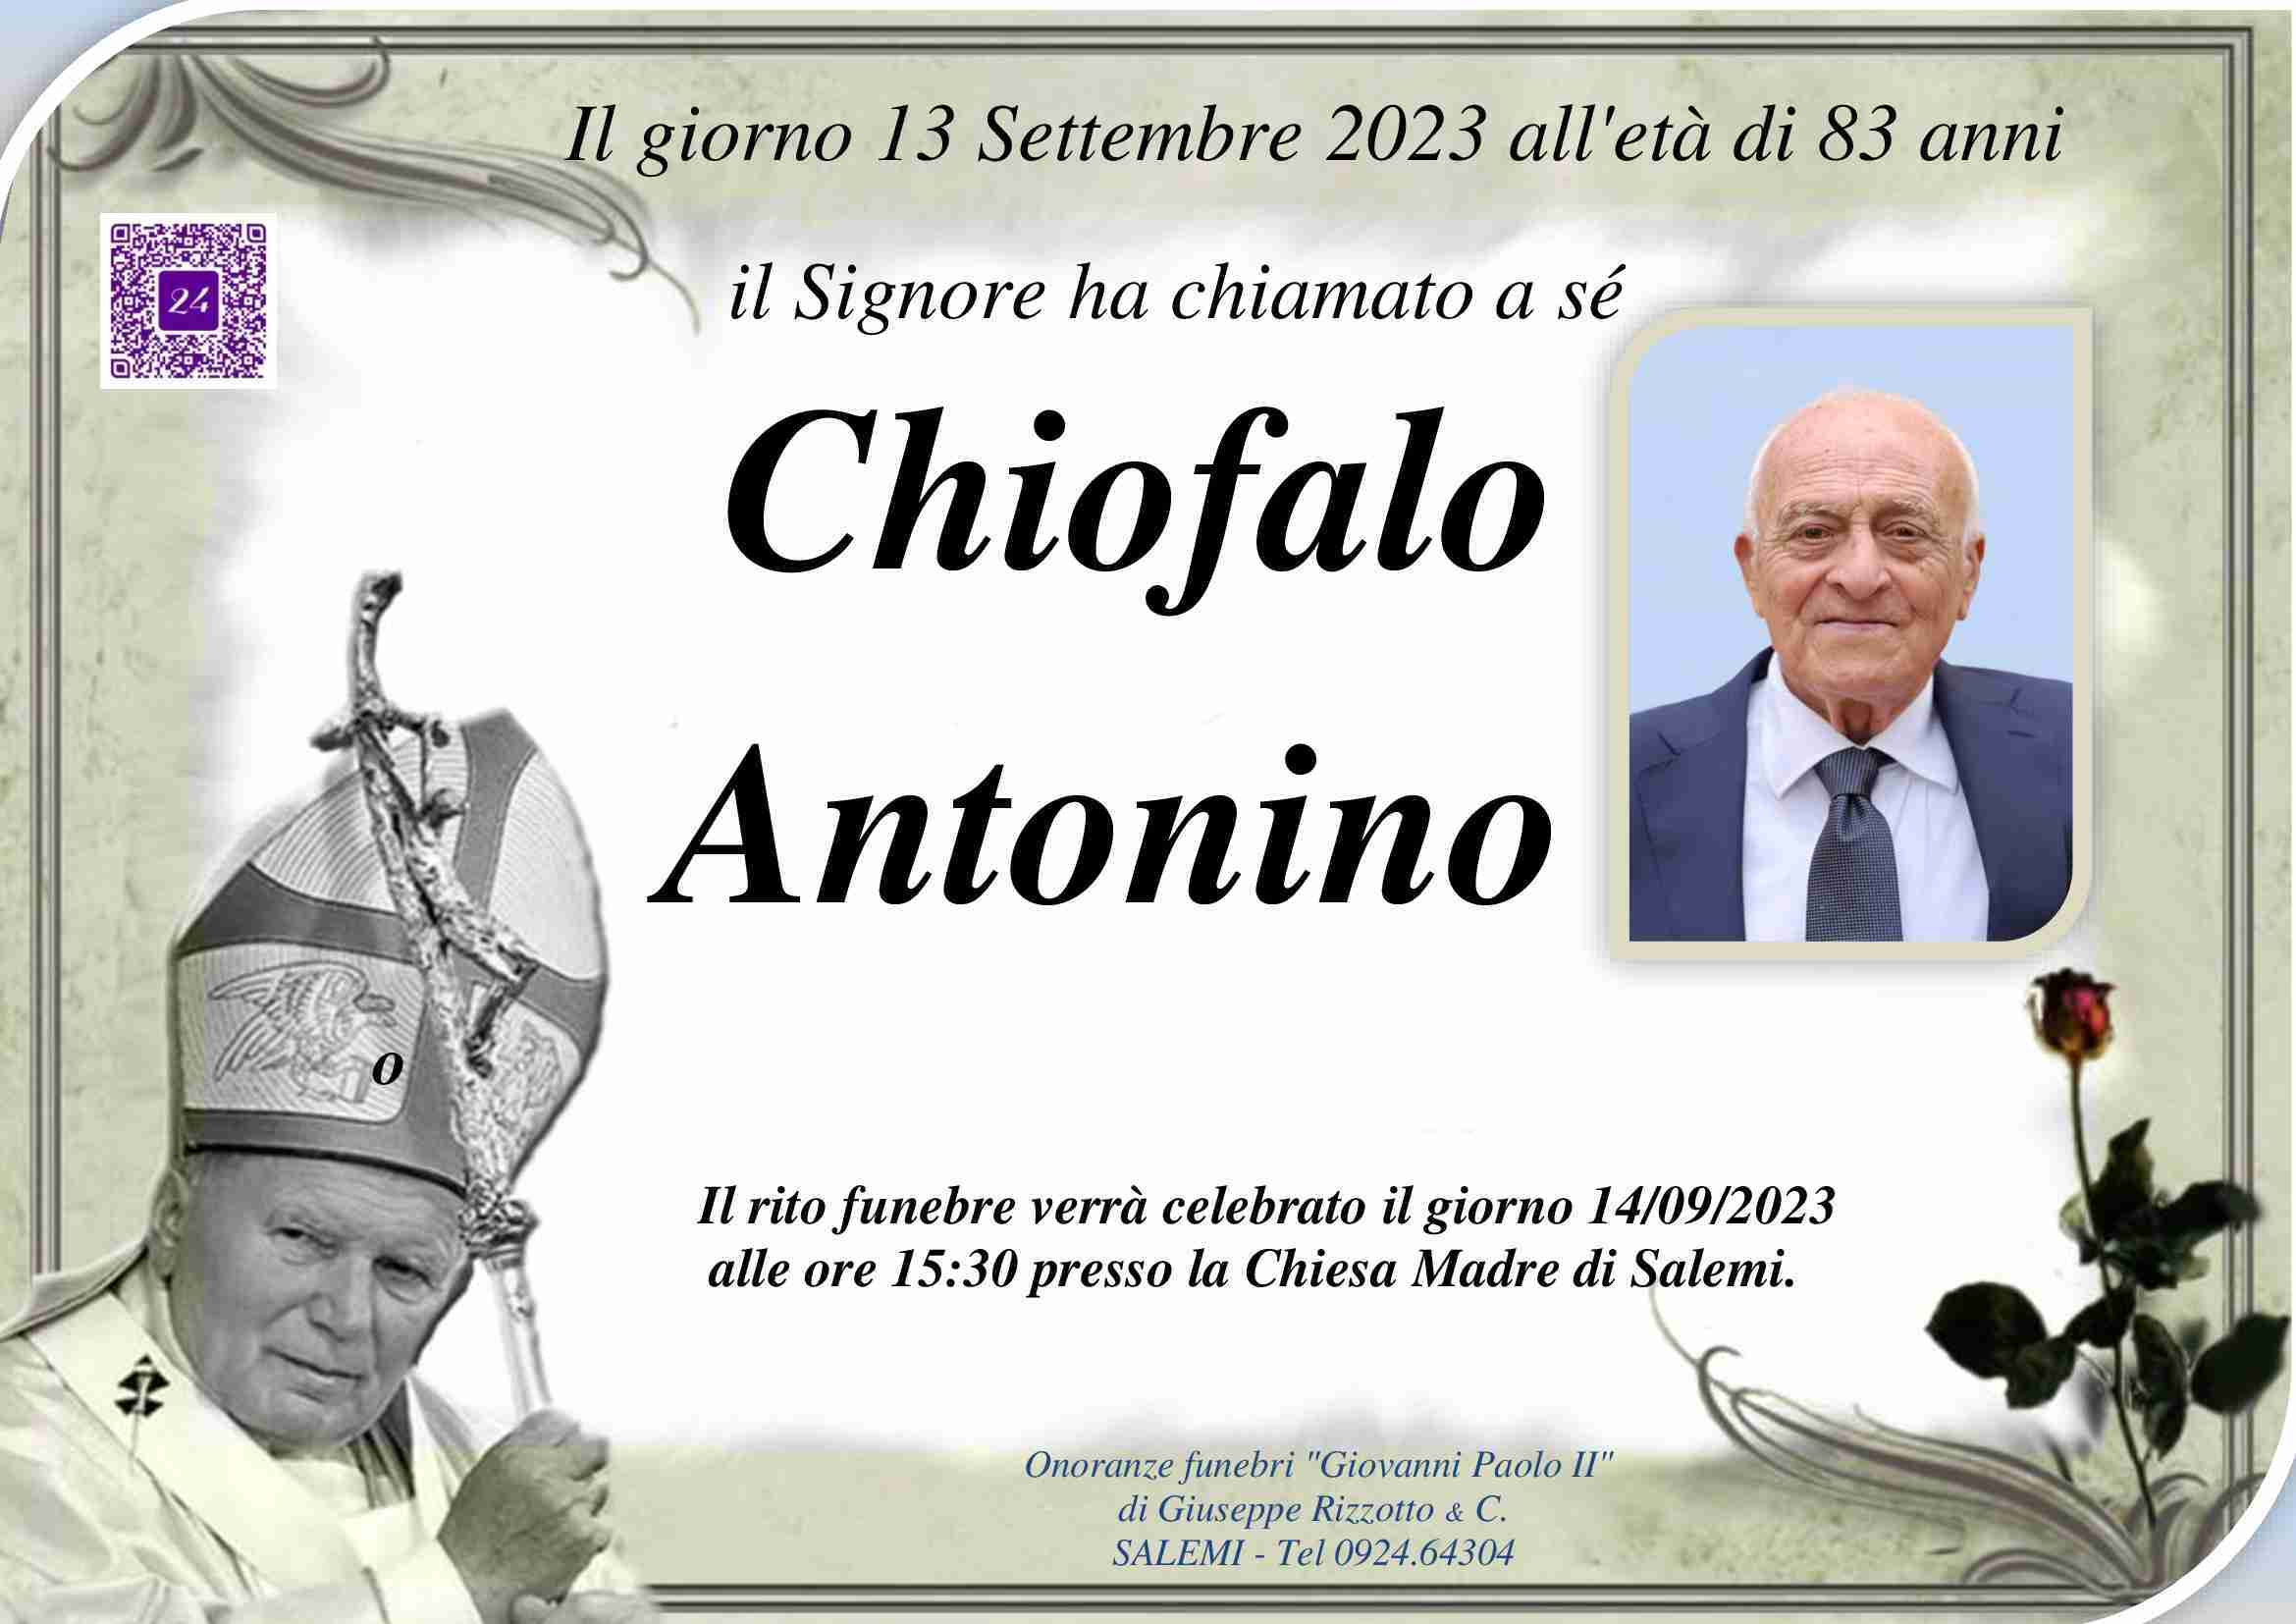 Antonino Chiofalo